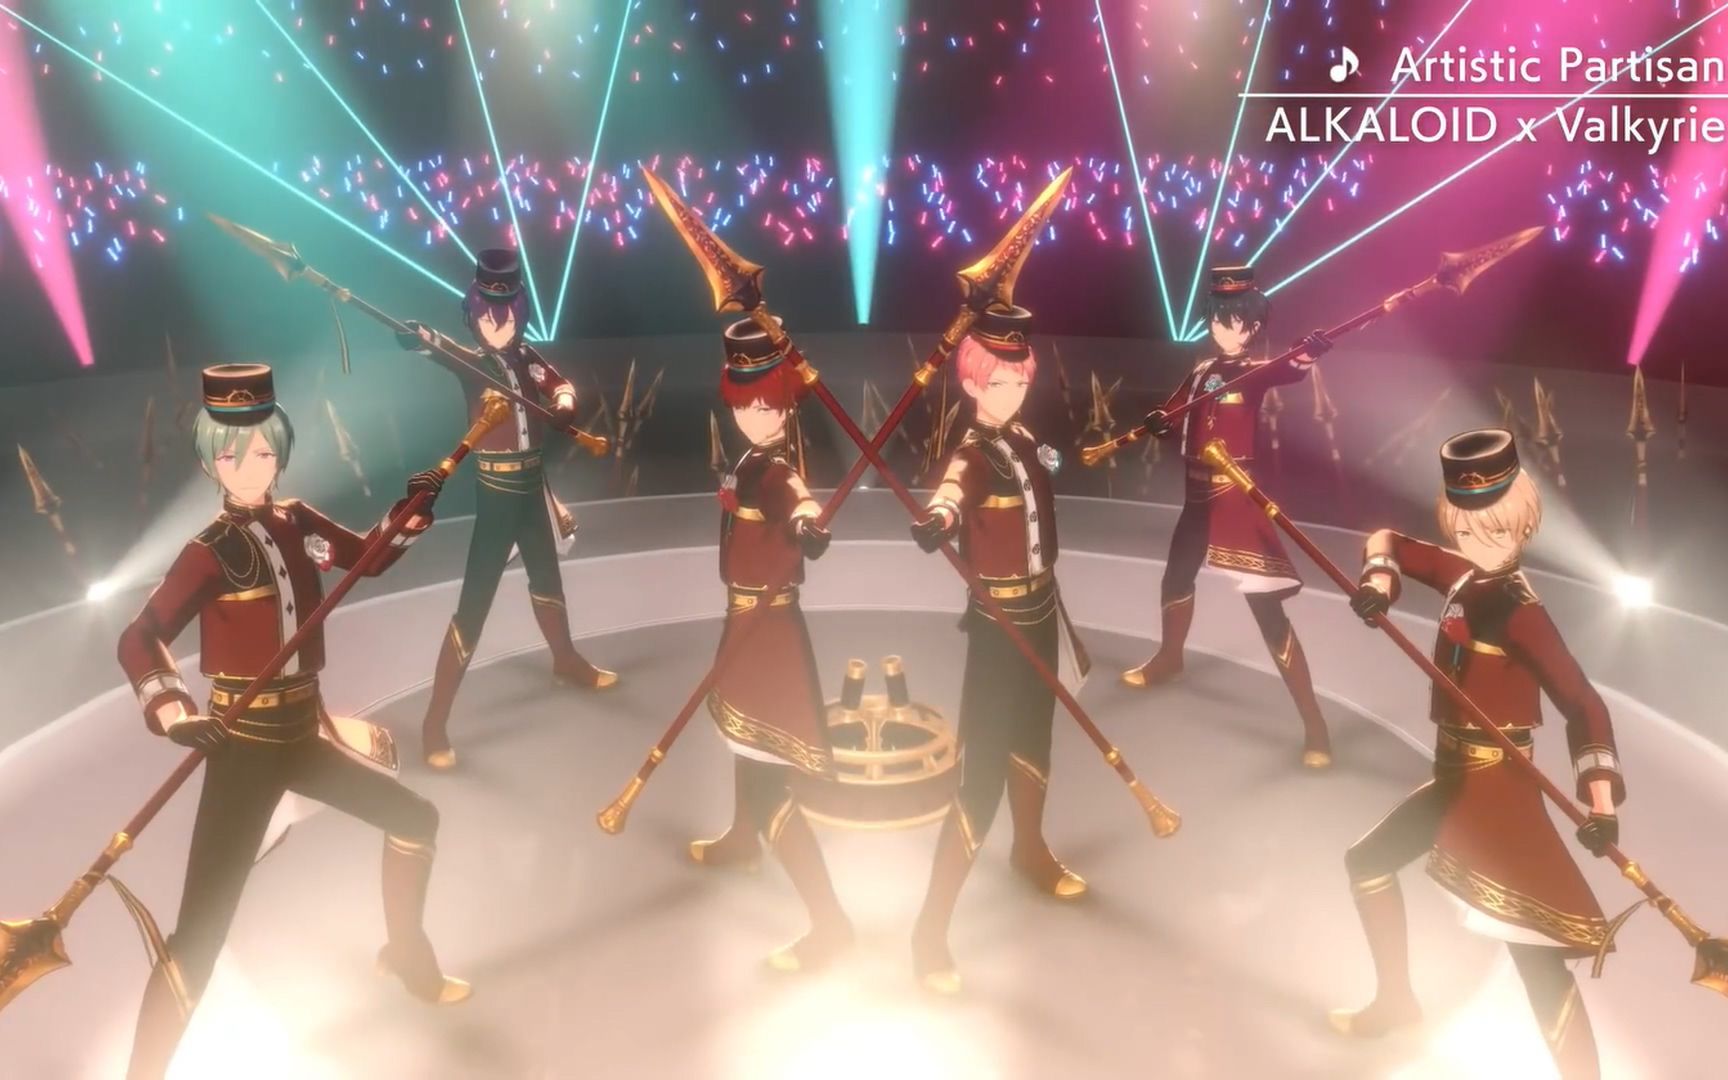 【偶像梦幻祭!!/ALKALOID × Valkyrie】歌曲MV「Artistic Partisan」